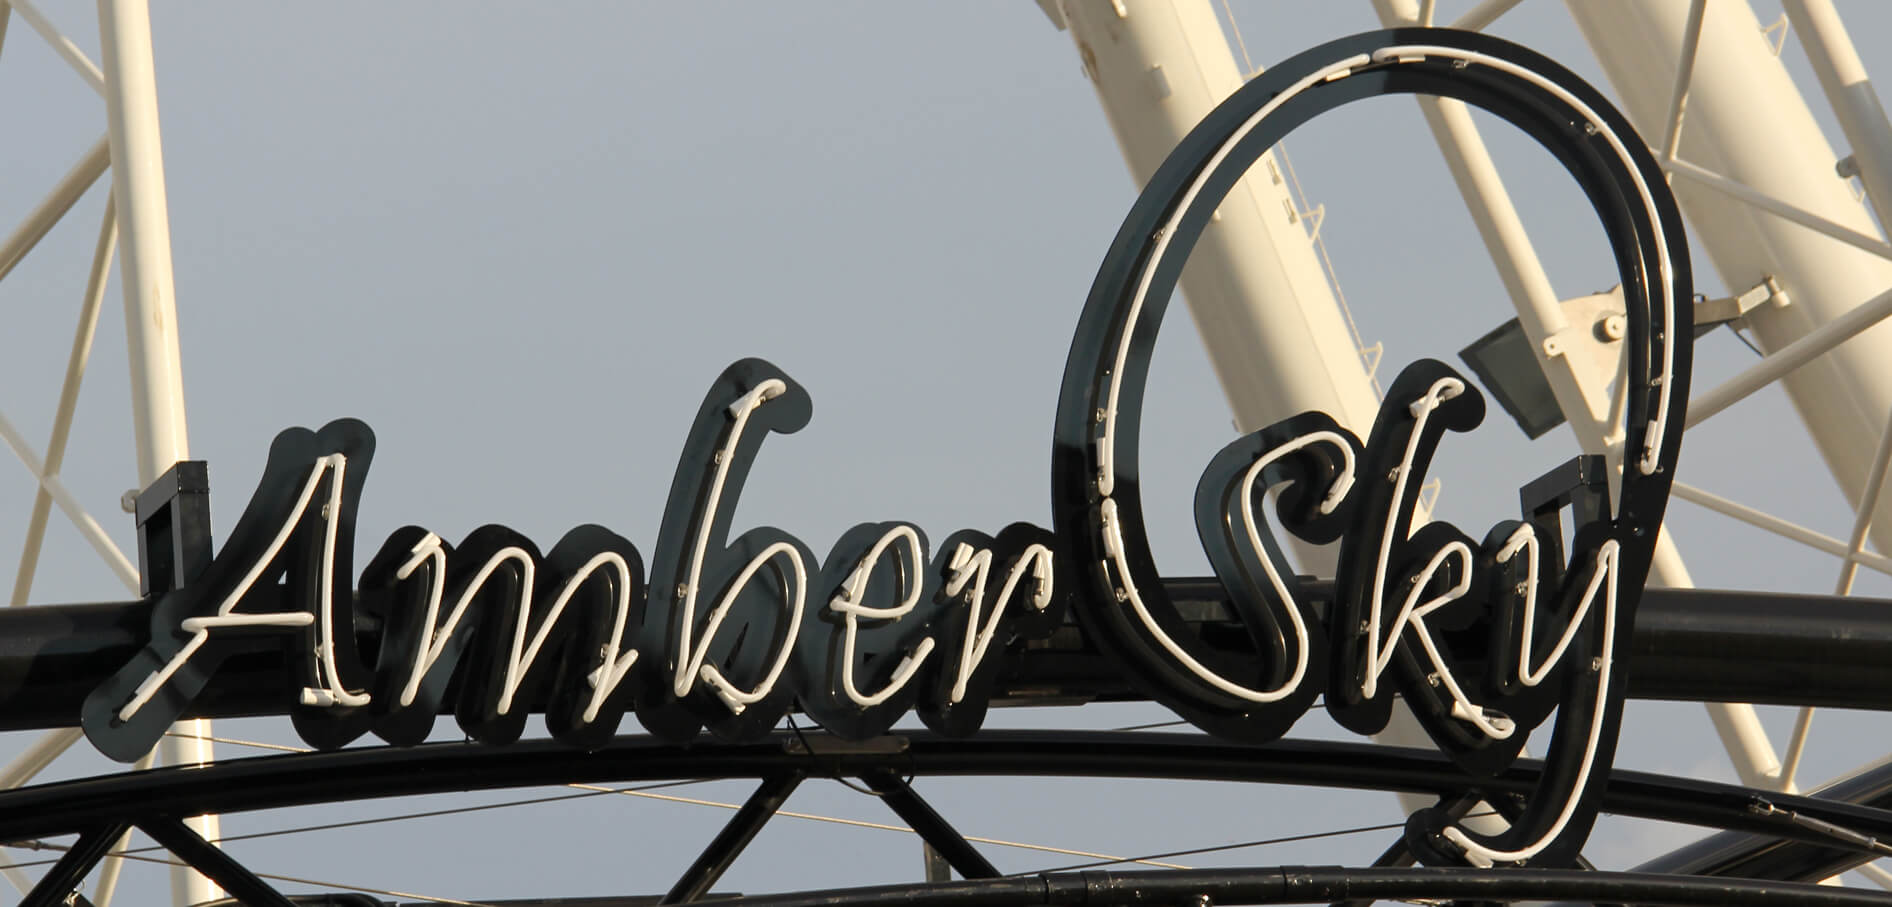 Cielo d'ambra - Amber Sky - insegna bianca al neon con il nome dell'azienda posizionata sullo scaffale